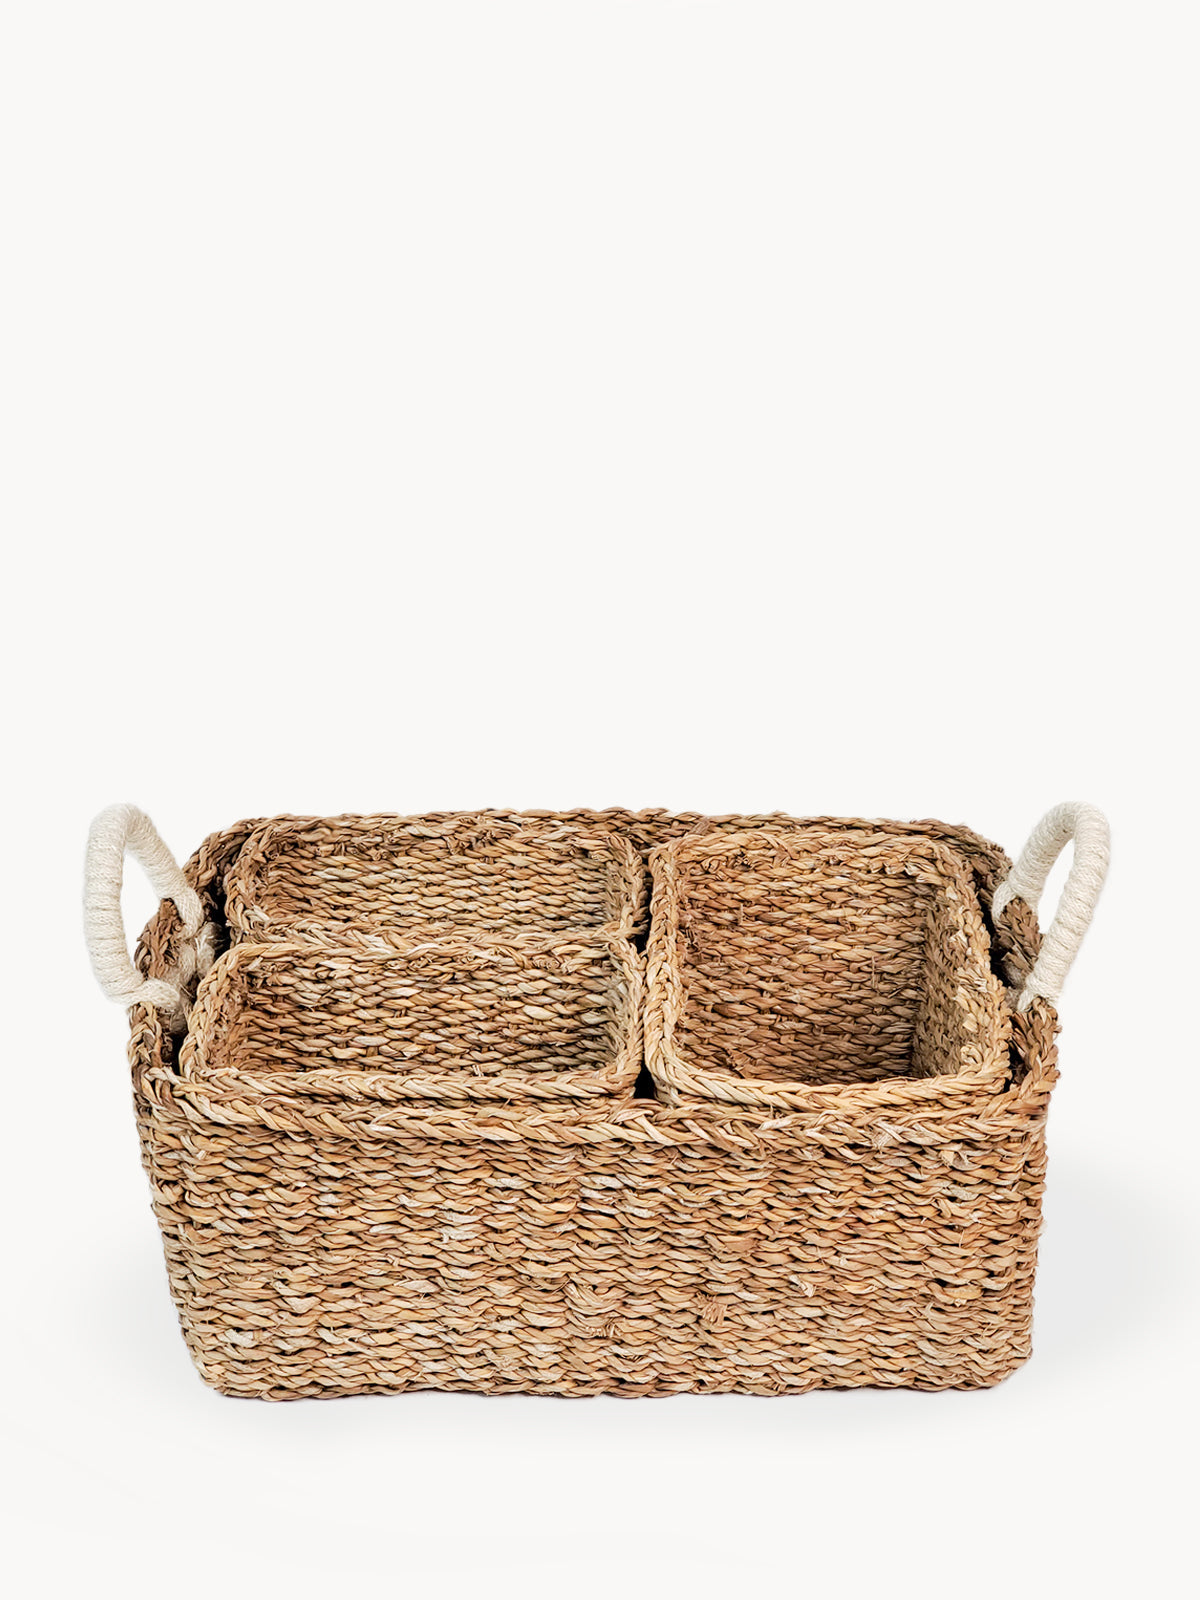 Buy Savar Everything Basket by KORISSA by KORISSA